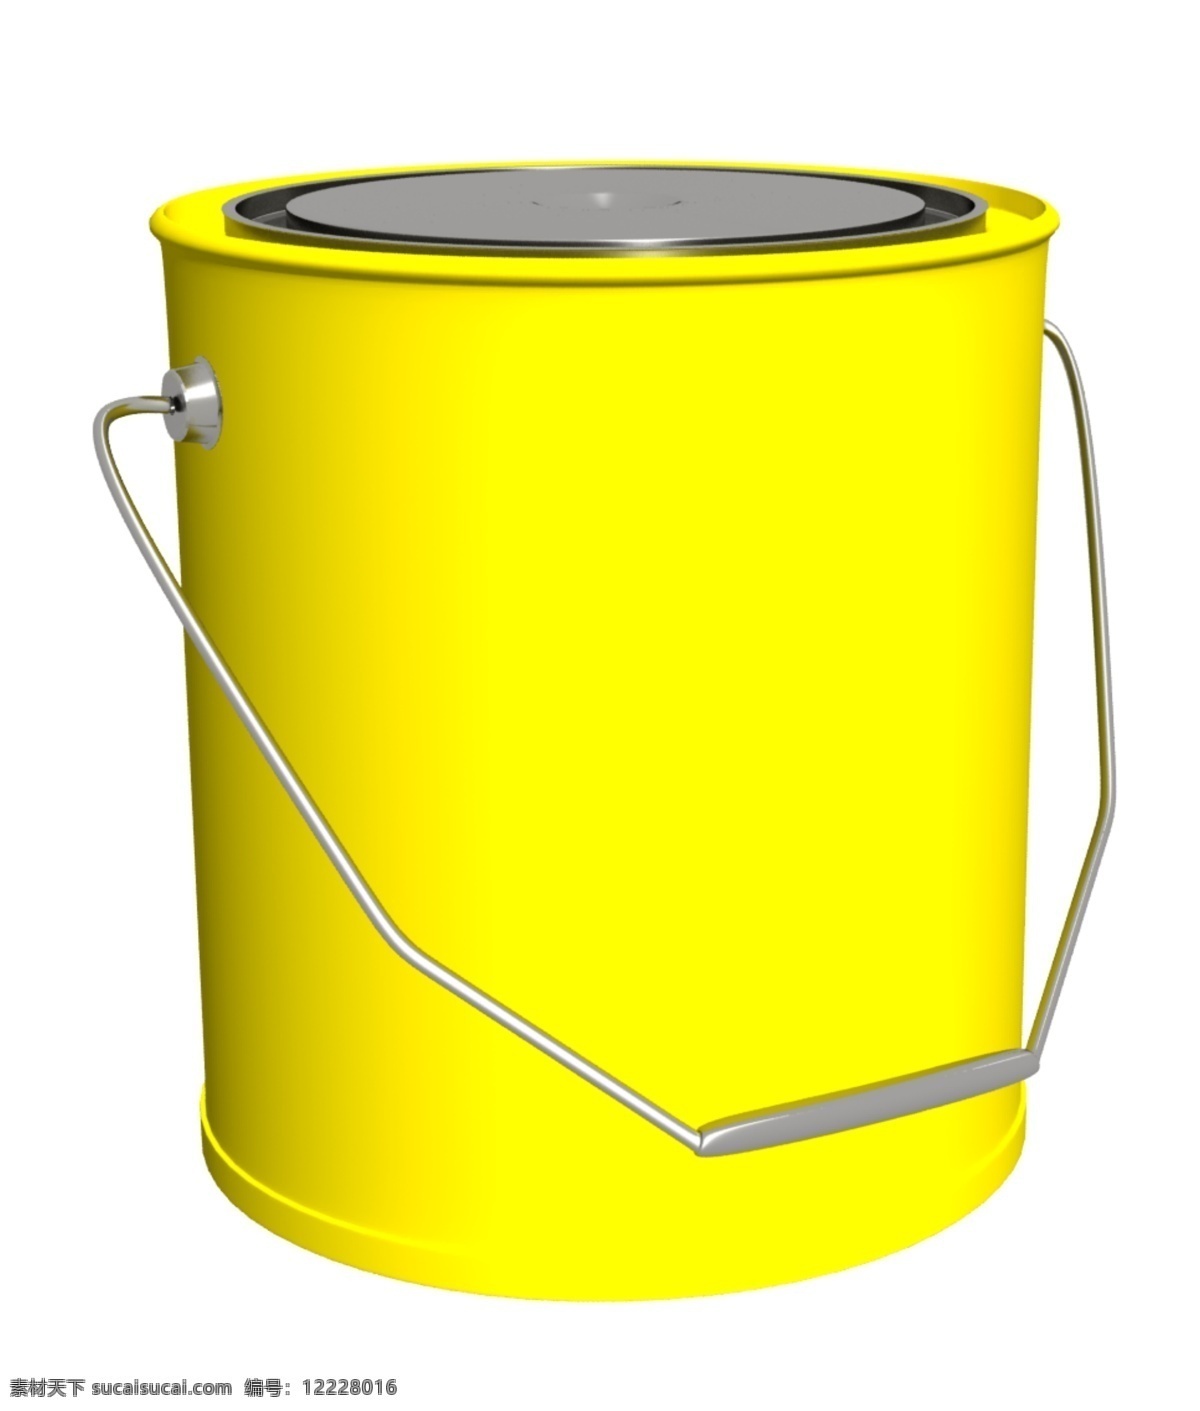 现实 黄色 油漆 可以 图标 web 创意 斗 高分辨率 接口 免费 漆 清洁 时尚的 现代的 原始的 质量 新鲜的 设计新的 hd 元素 用户界面 ui元素 详细的 黄色的可以 盖 房子漆 psd源文件